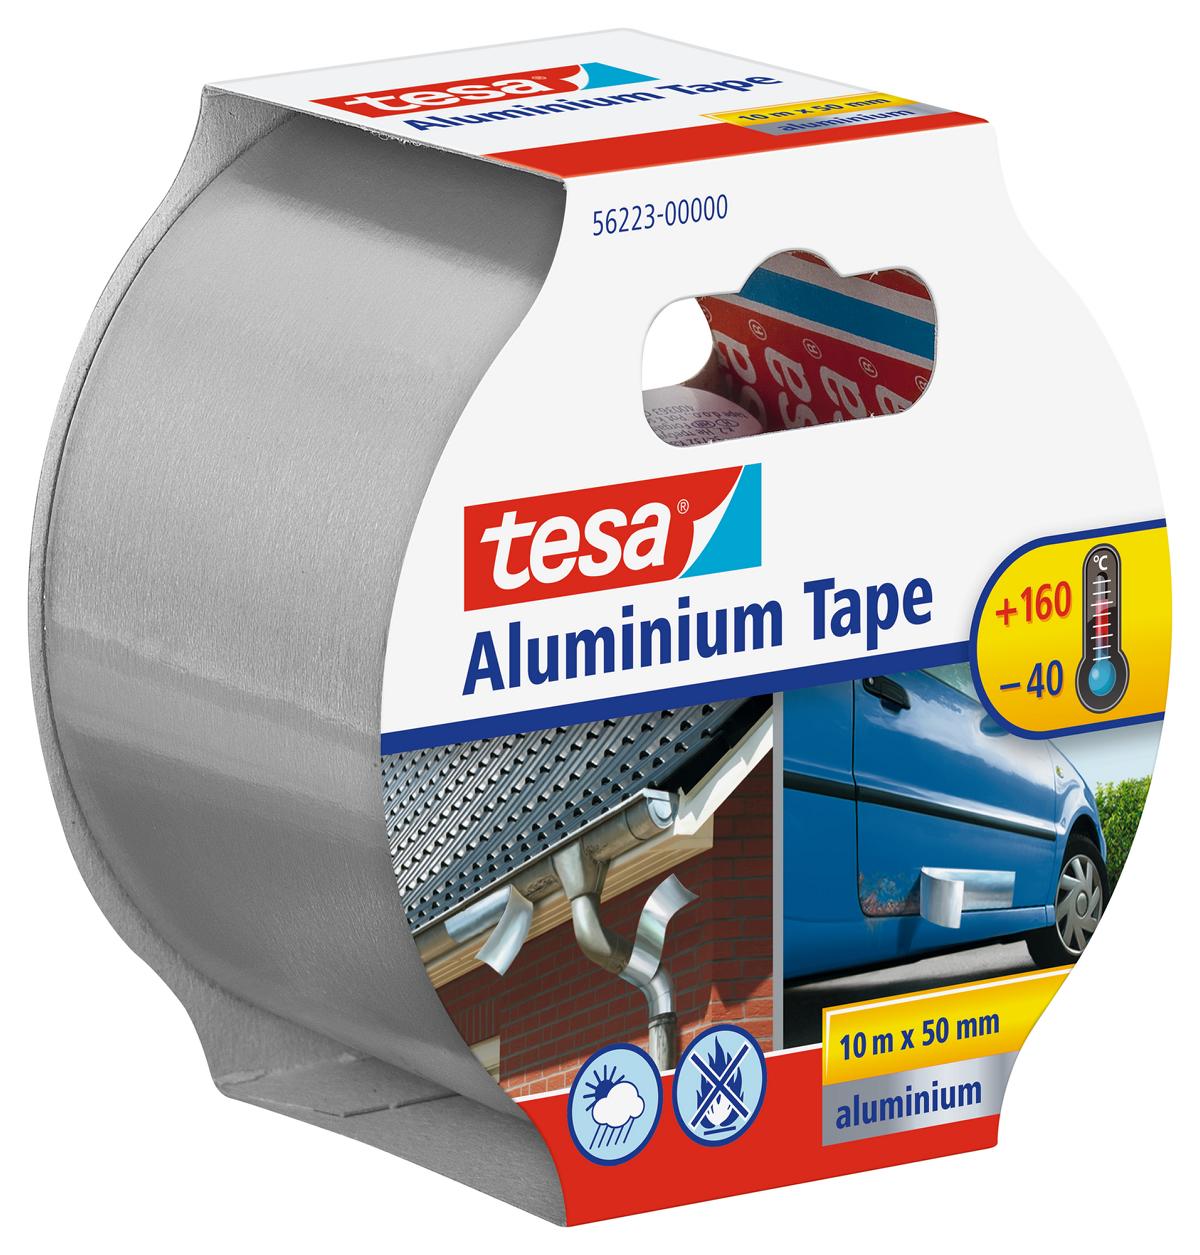 tesa Aluminium Tape, 10 m